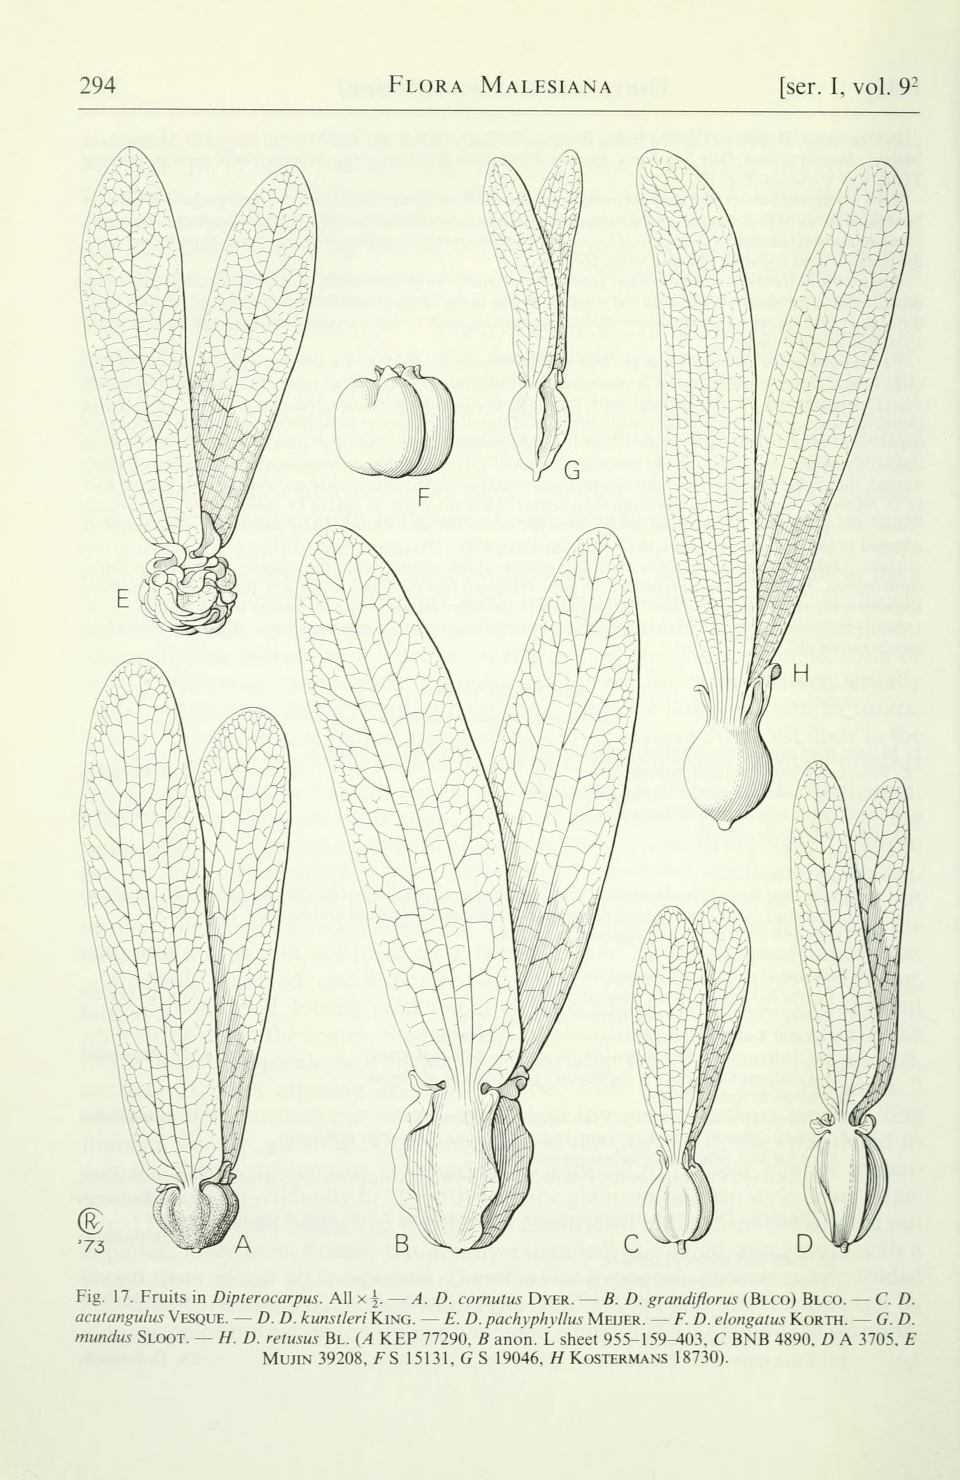 Dipterocarpus retusus